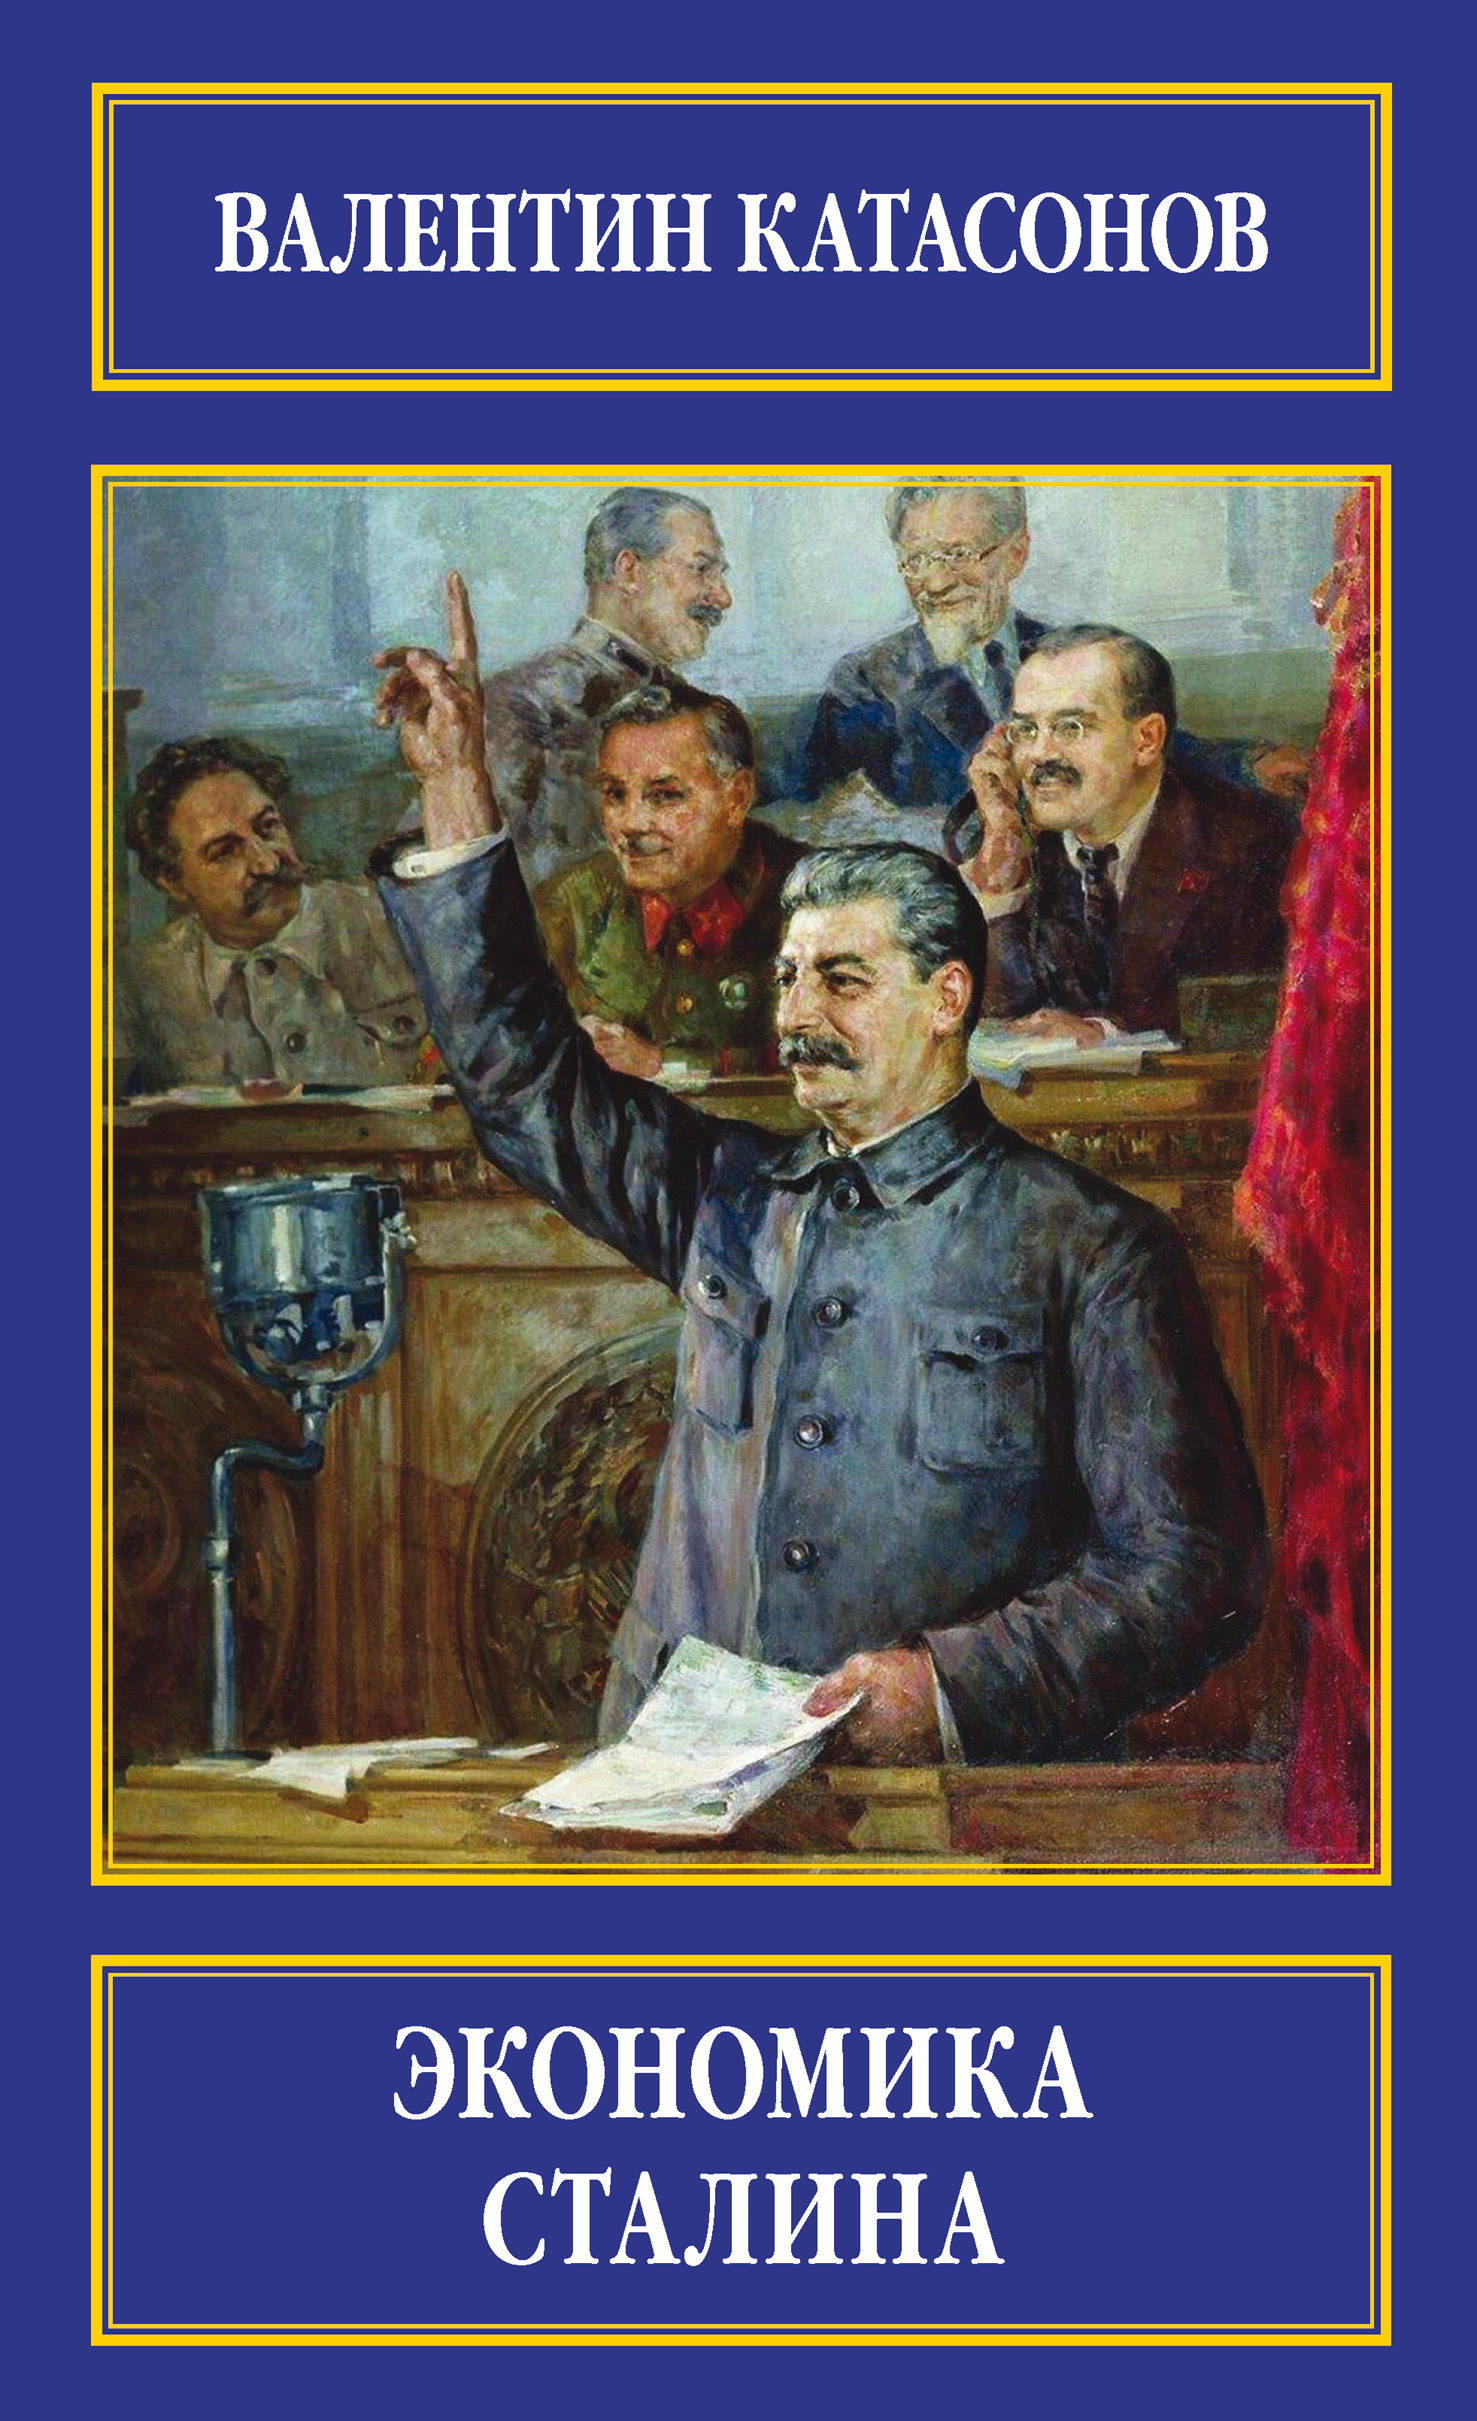 Книга Экономика Сталина из серии , созданная Валентин Катасонов, может относится к жанру Экономика, История. Стоимость электронной книги Экономика Сталина с идентификатором 16898462 составляет 399.00 руб.